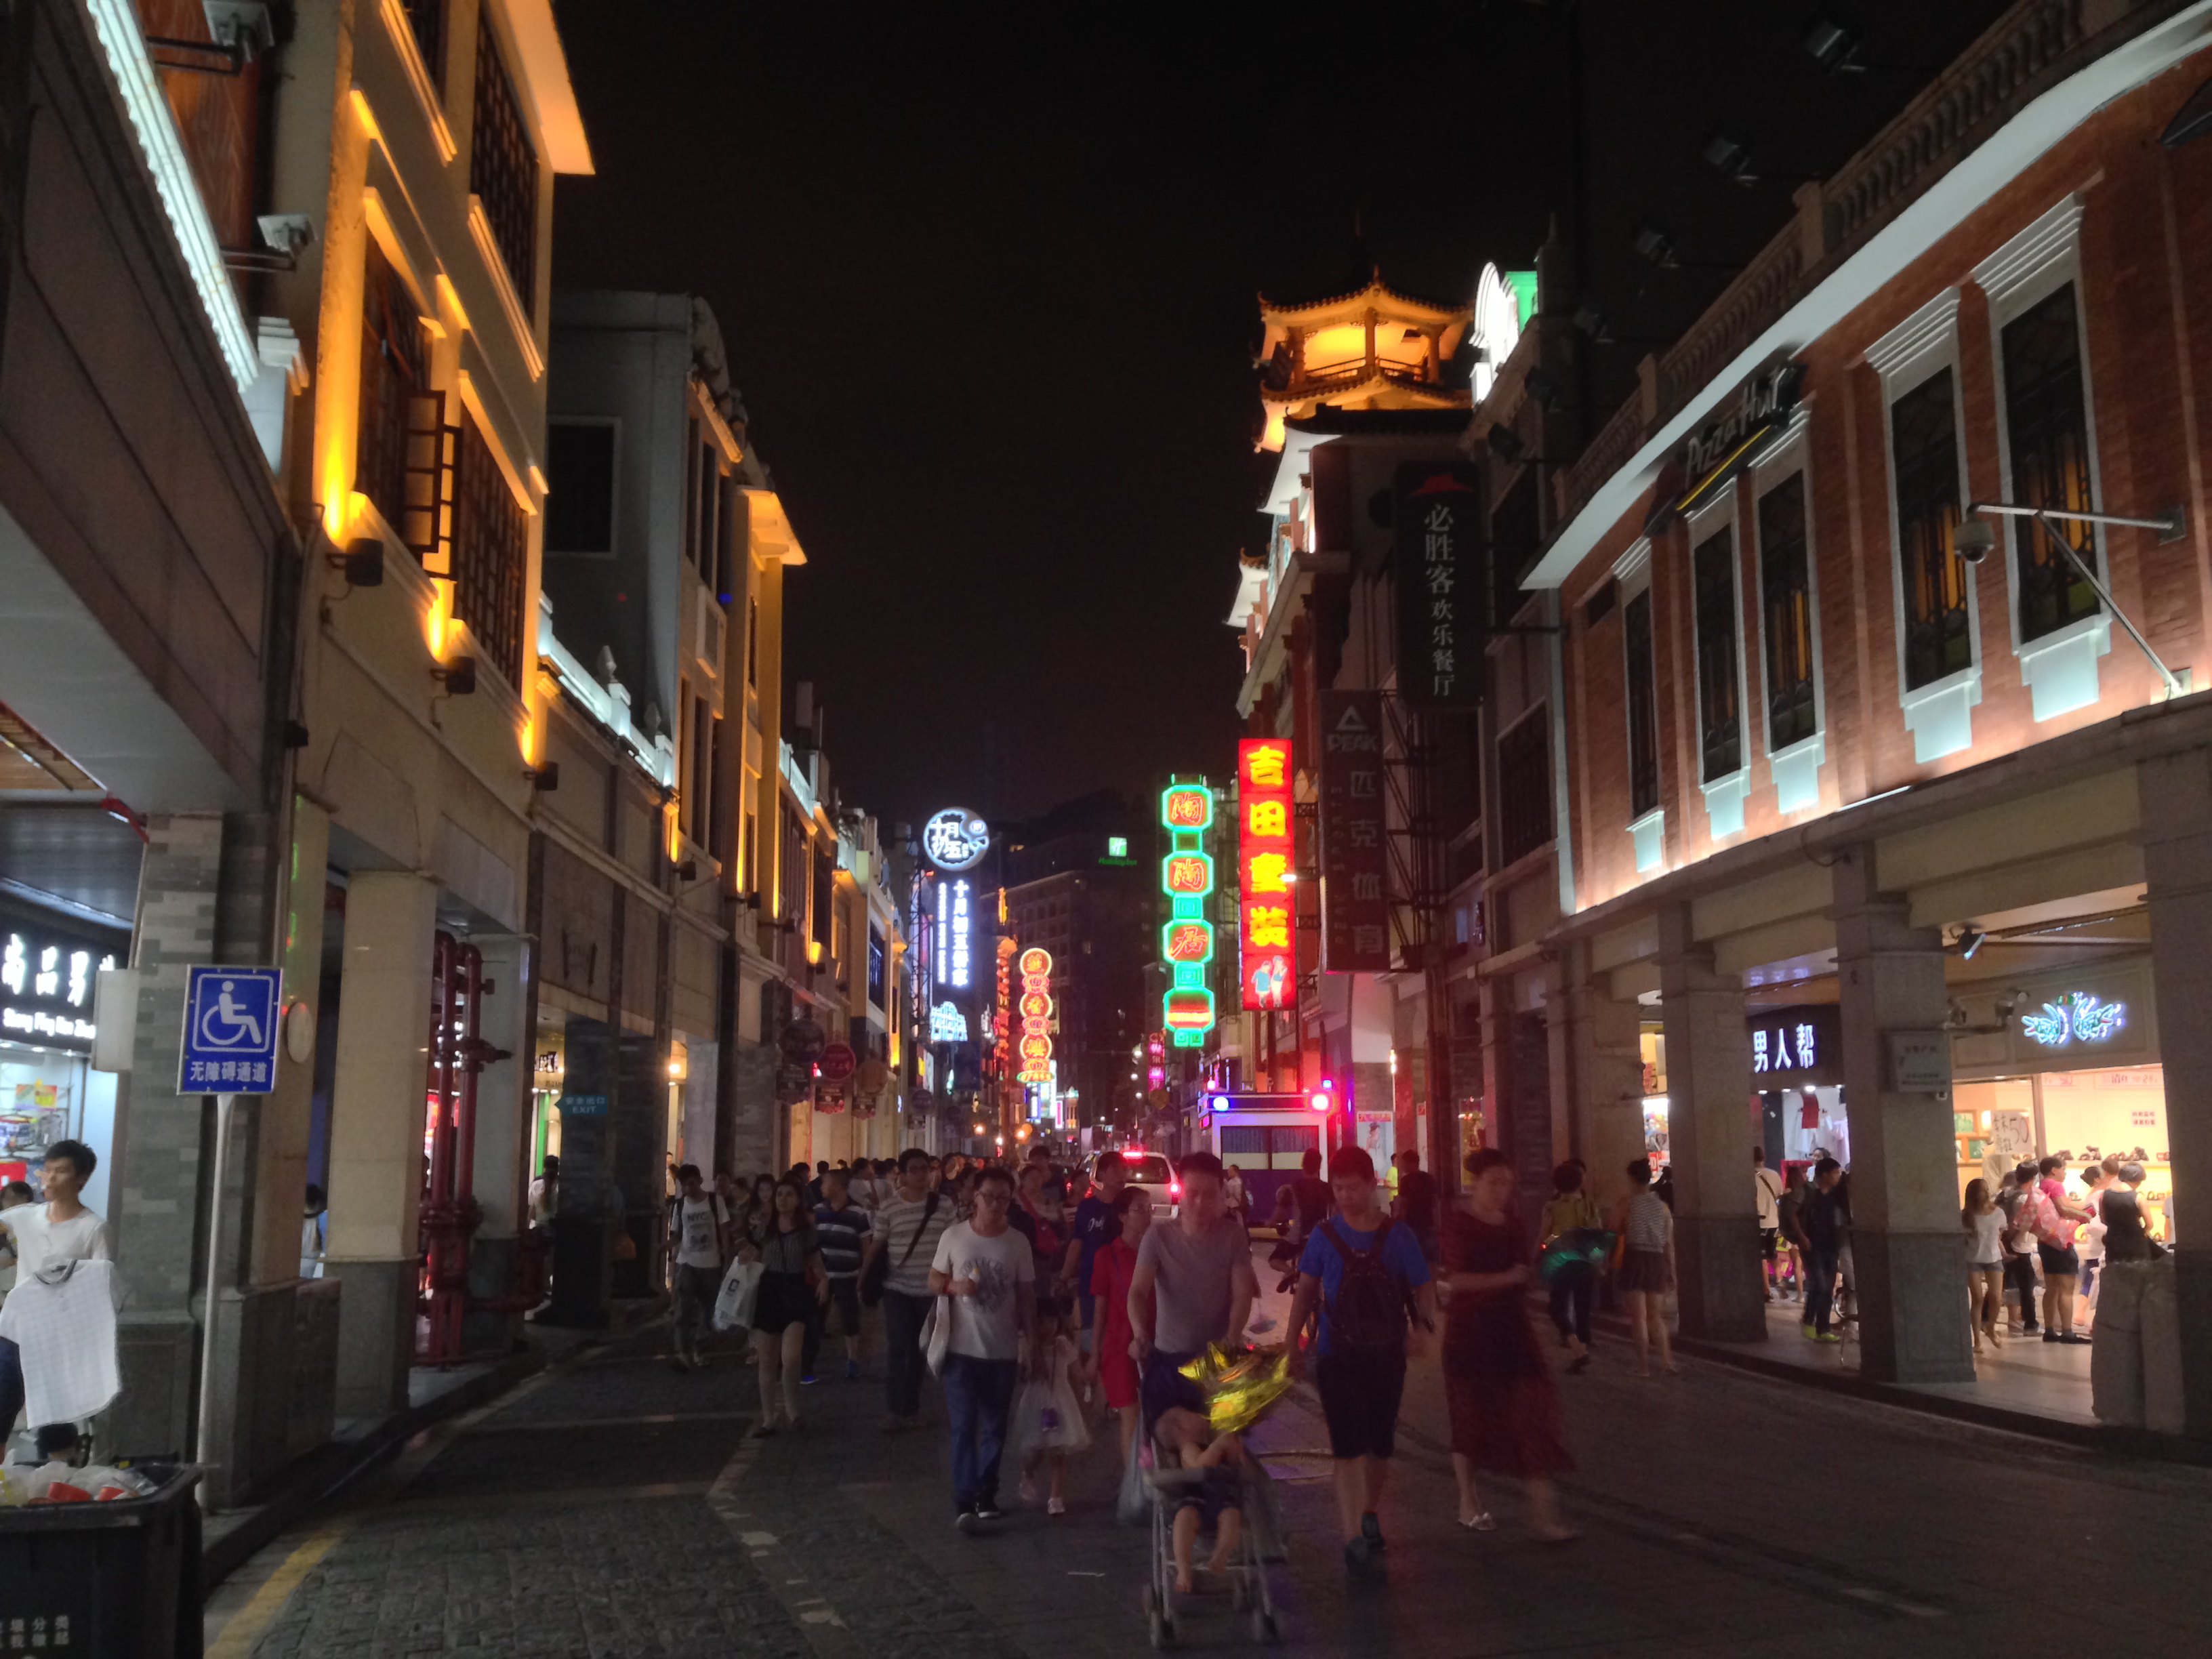 【携程攻略】广州上下九步行街景点,位于西关深处的广州旧城区,很多